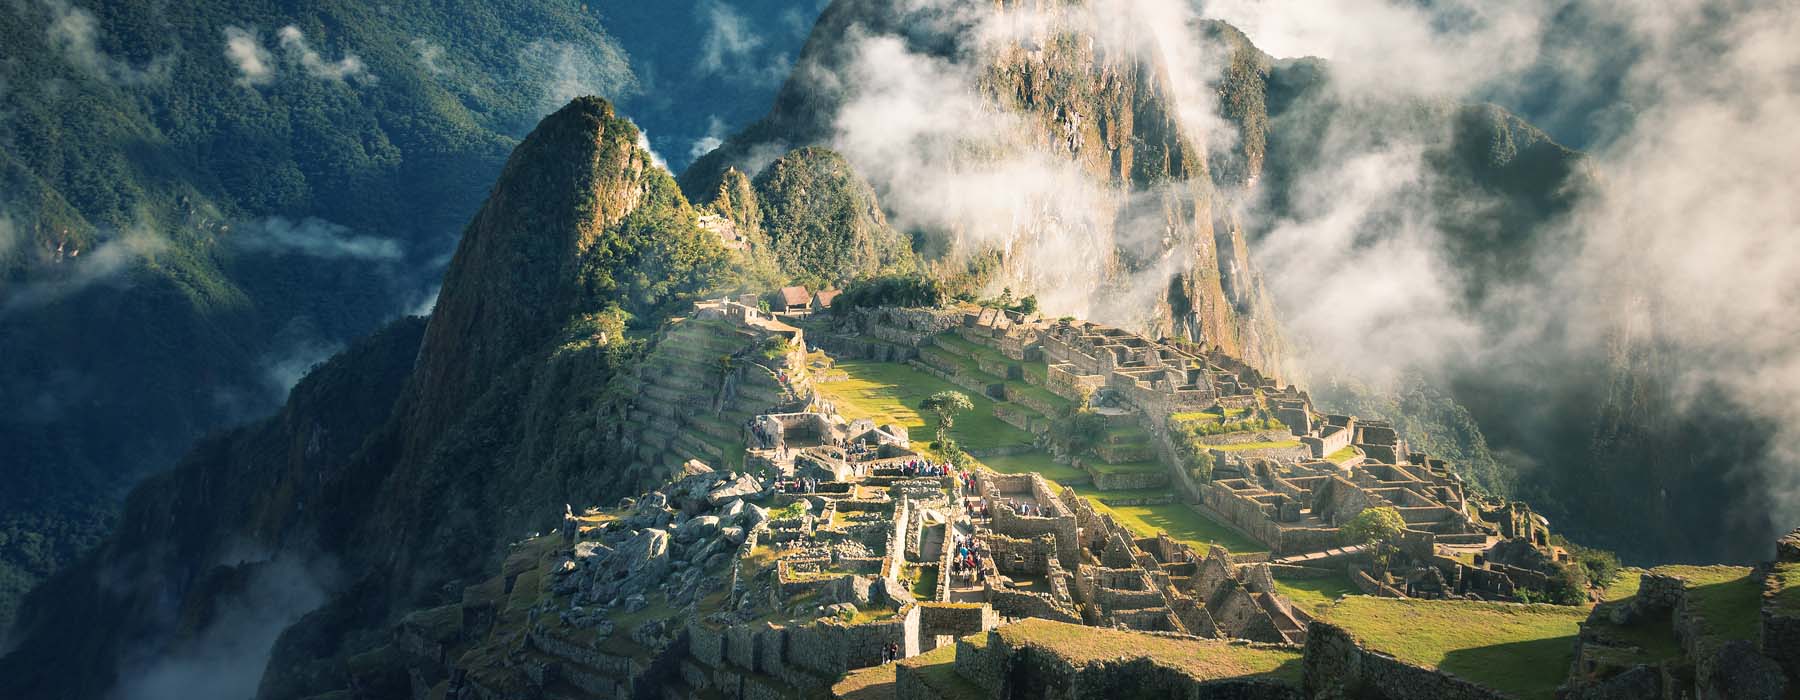 Peru<br class="hidden-md hidden-lg" /> Sabbaticals